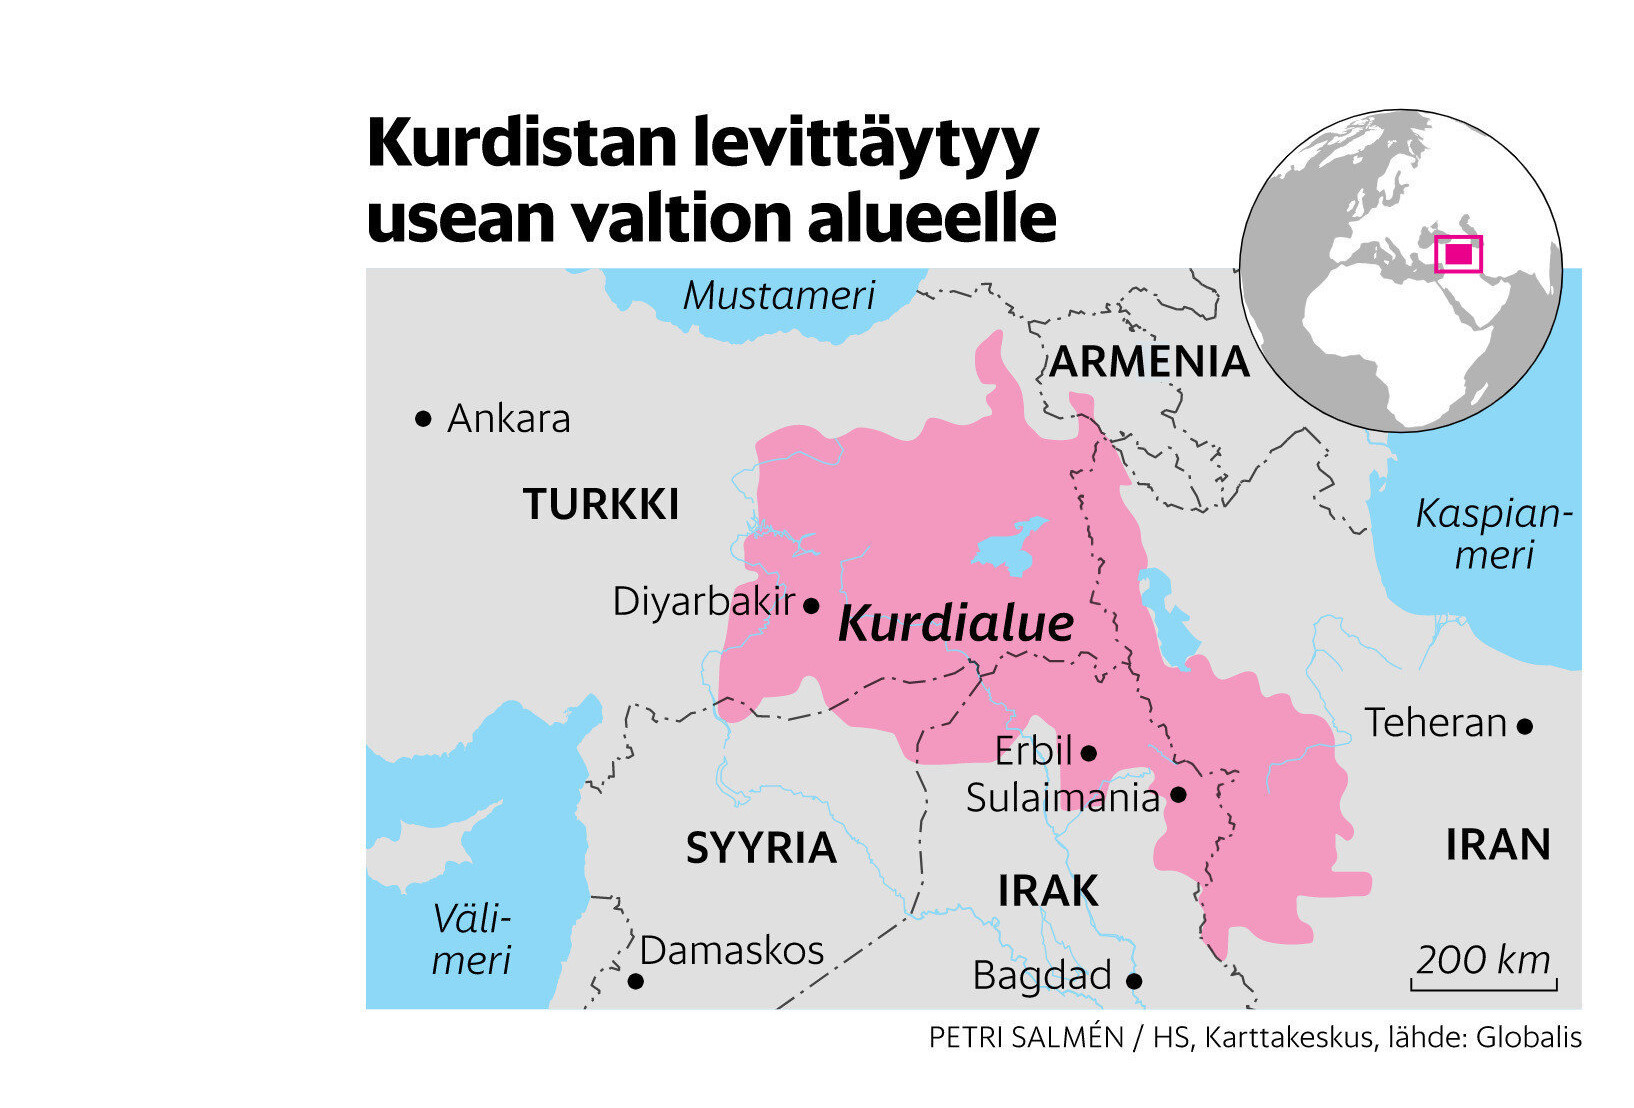 Helsingin Sanomat isimli haber sitesi, vekillerin demeçlerinin yer aldığı satırların arasına sözde Kürdistan haritası yerleştirdi.